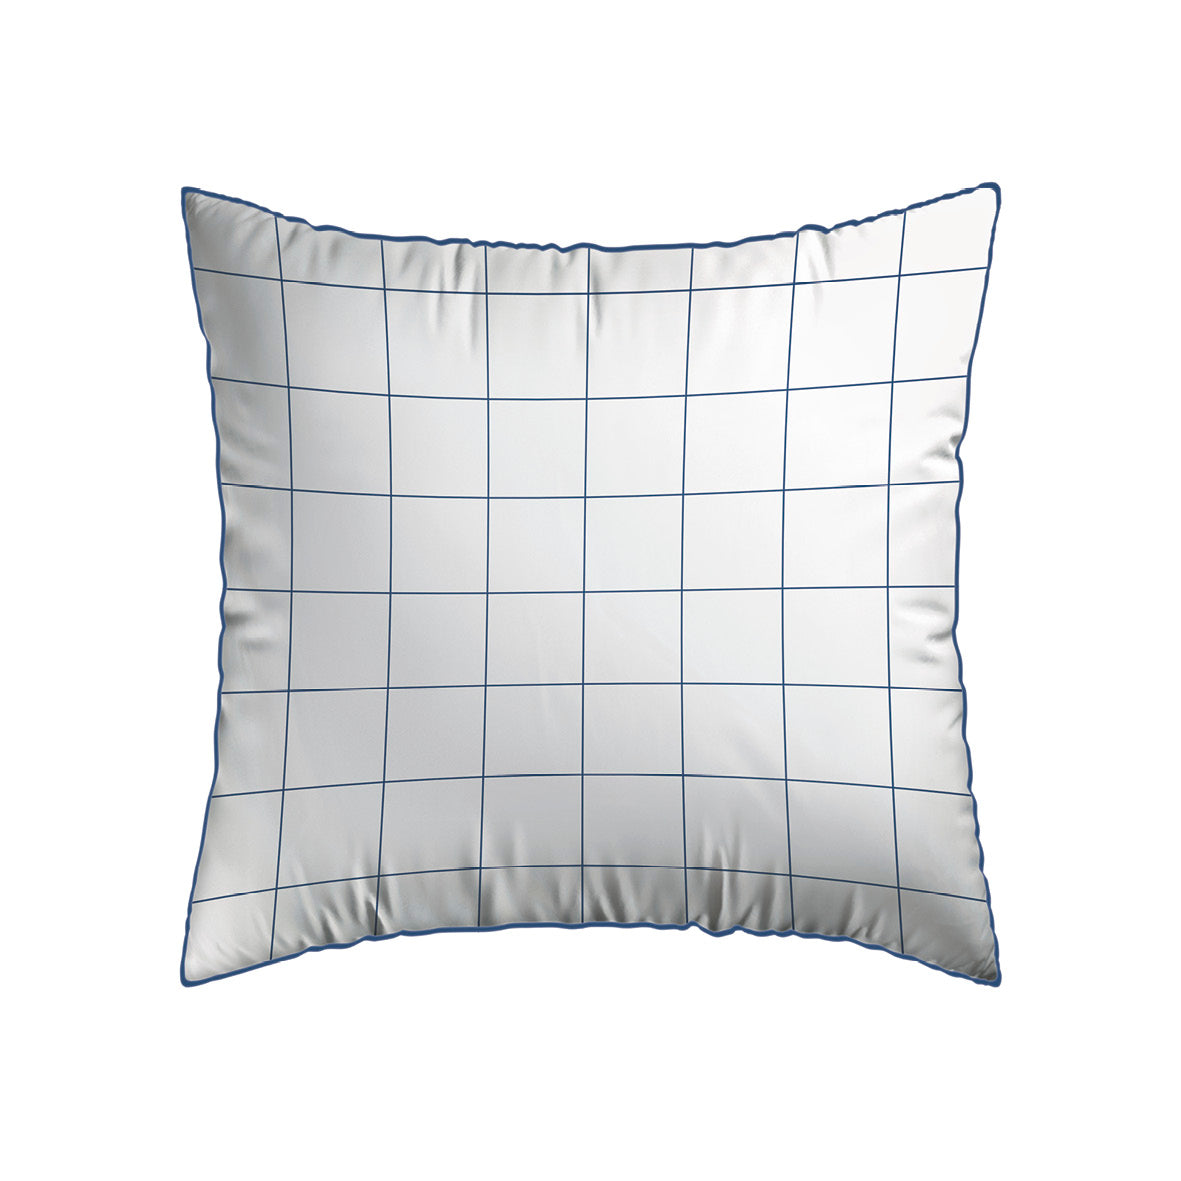 Pillowcase(s) cotton satin - Caren White